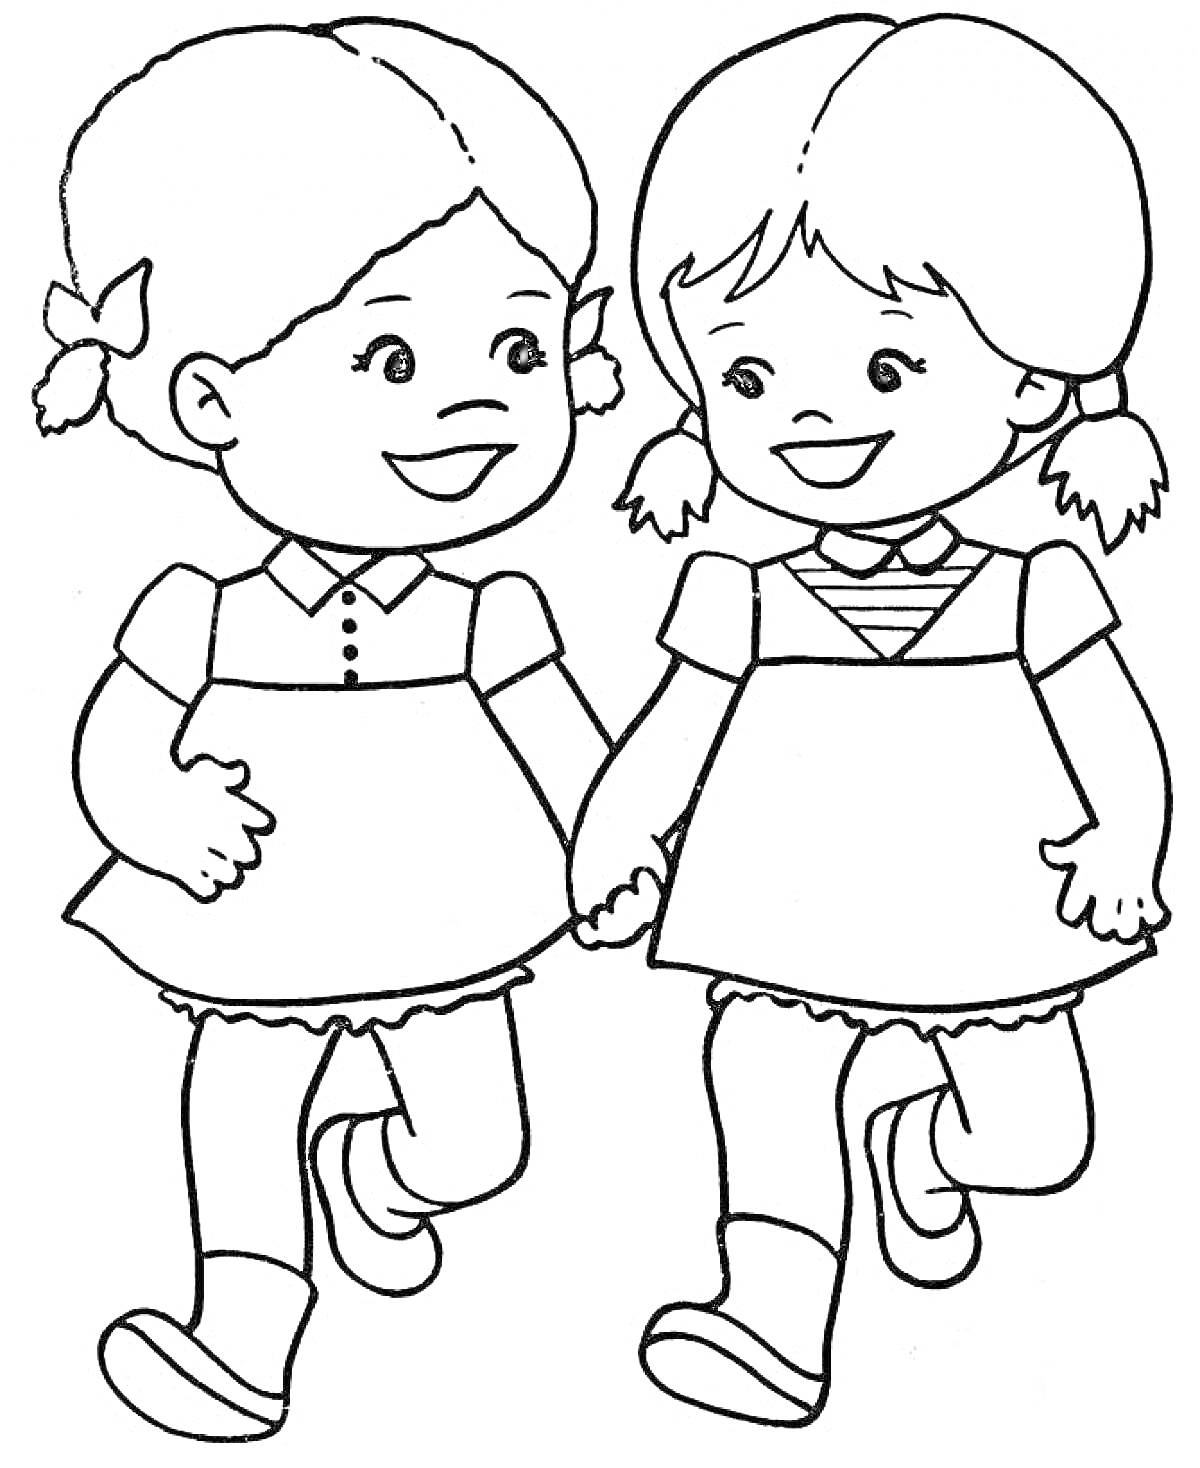 Две девочки, держащиеся за руки и гуляющие вместе